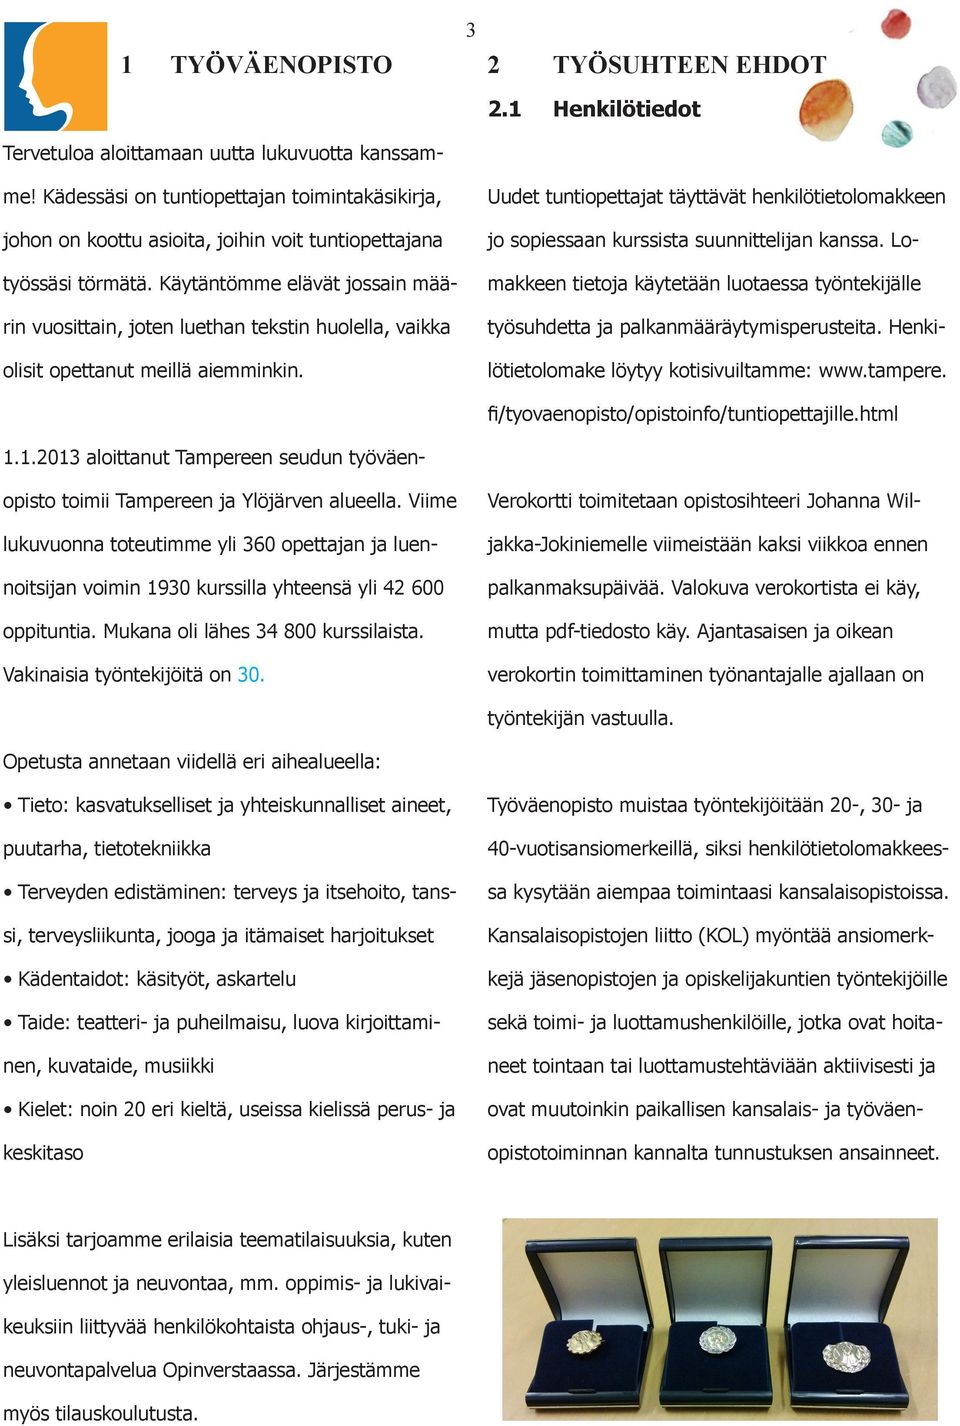 1.2013 aloittanut Tampereen seudun työväenopisto toimii Tampereen ja Ylöjärven alueella.